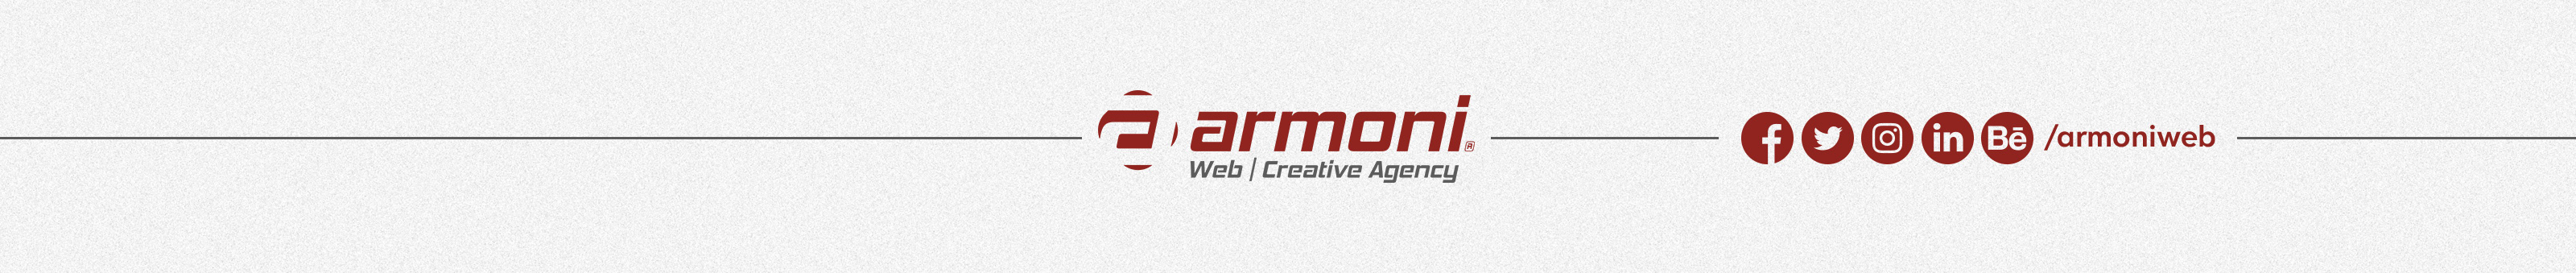 Armoni ® Web's profile banner